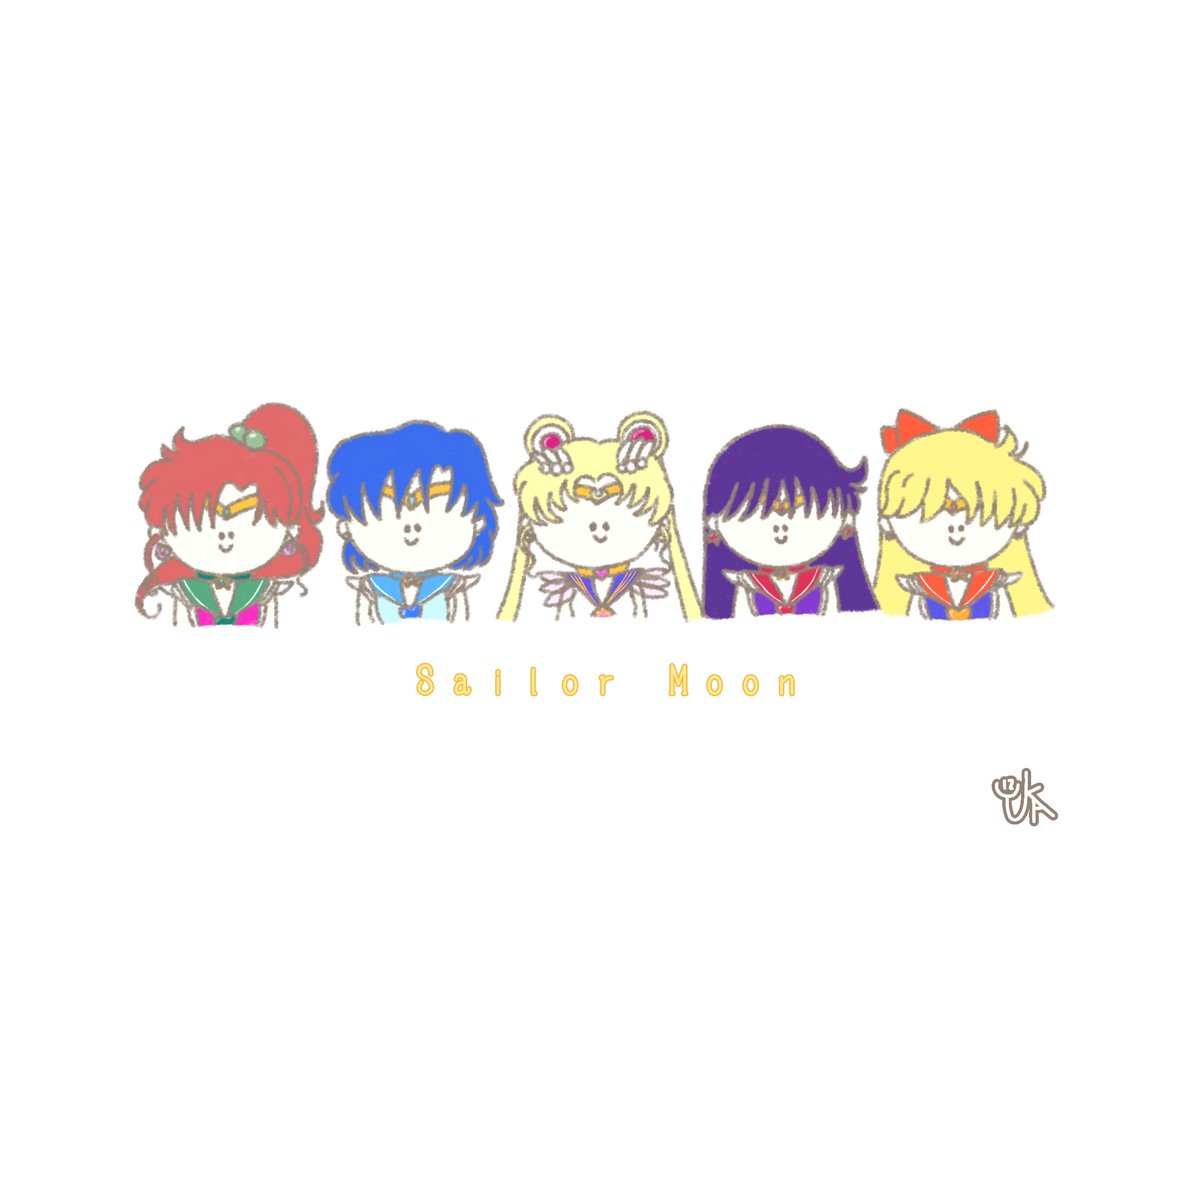 ゆかいず A Twitter Sailor Moon 完 できあがり Ibispaintx Illustration イラスト おえかき お絵描き 絵 ゆるいイラスト ゆるい セーラームーン Sailormoon ファンアート T Co Iqc7ejrumu Twitter